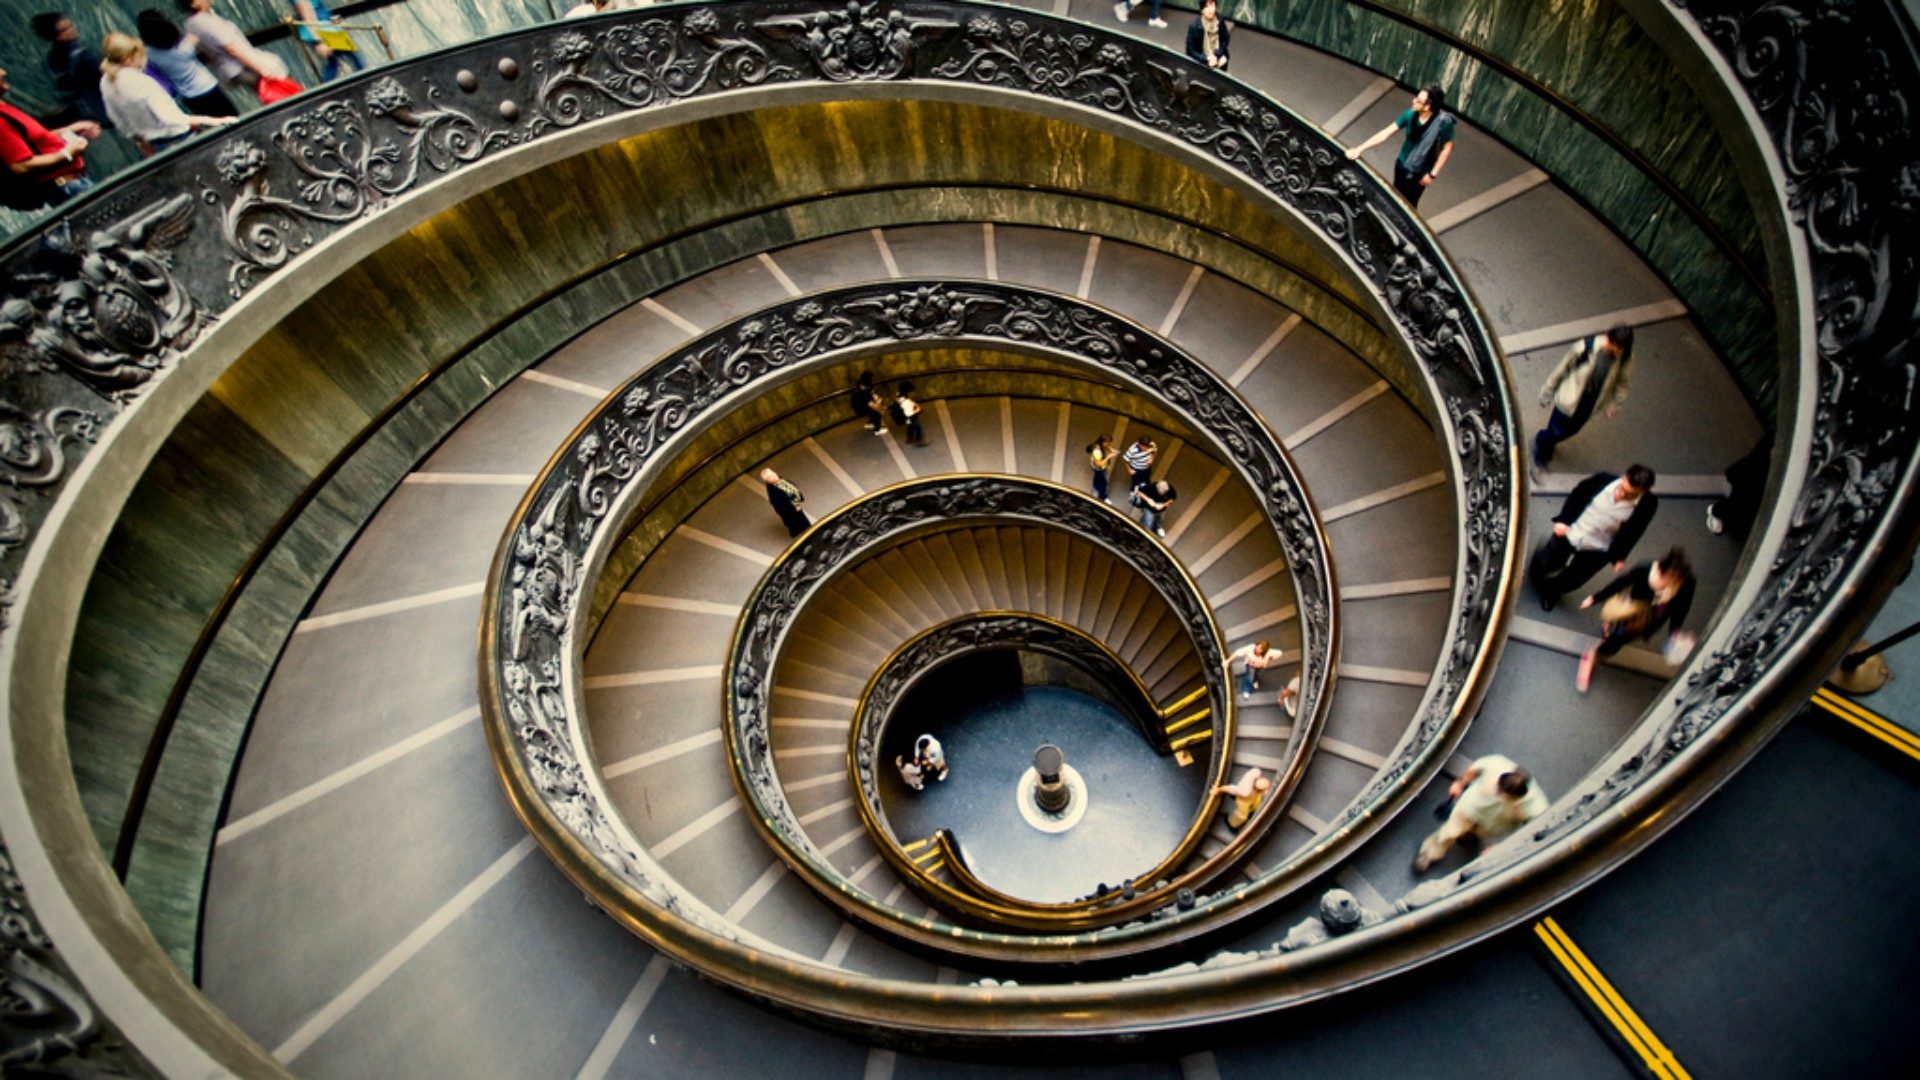 Selon le pape, les Musées du Vatican doivent être une “Maison vivante“ | © Oleksandr Samoylyk/Flickr/CC BY 2.0